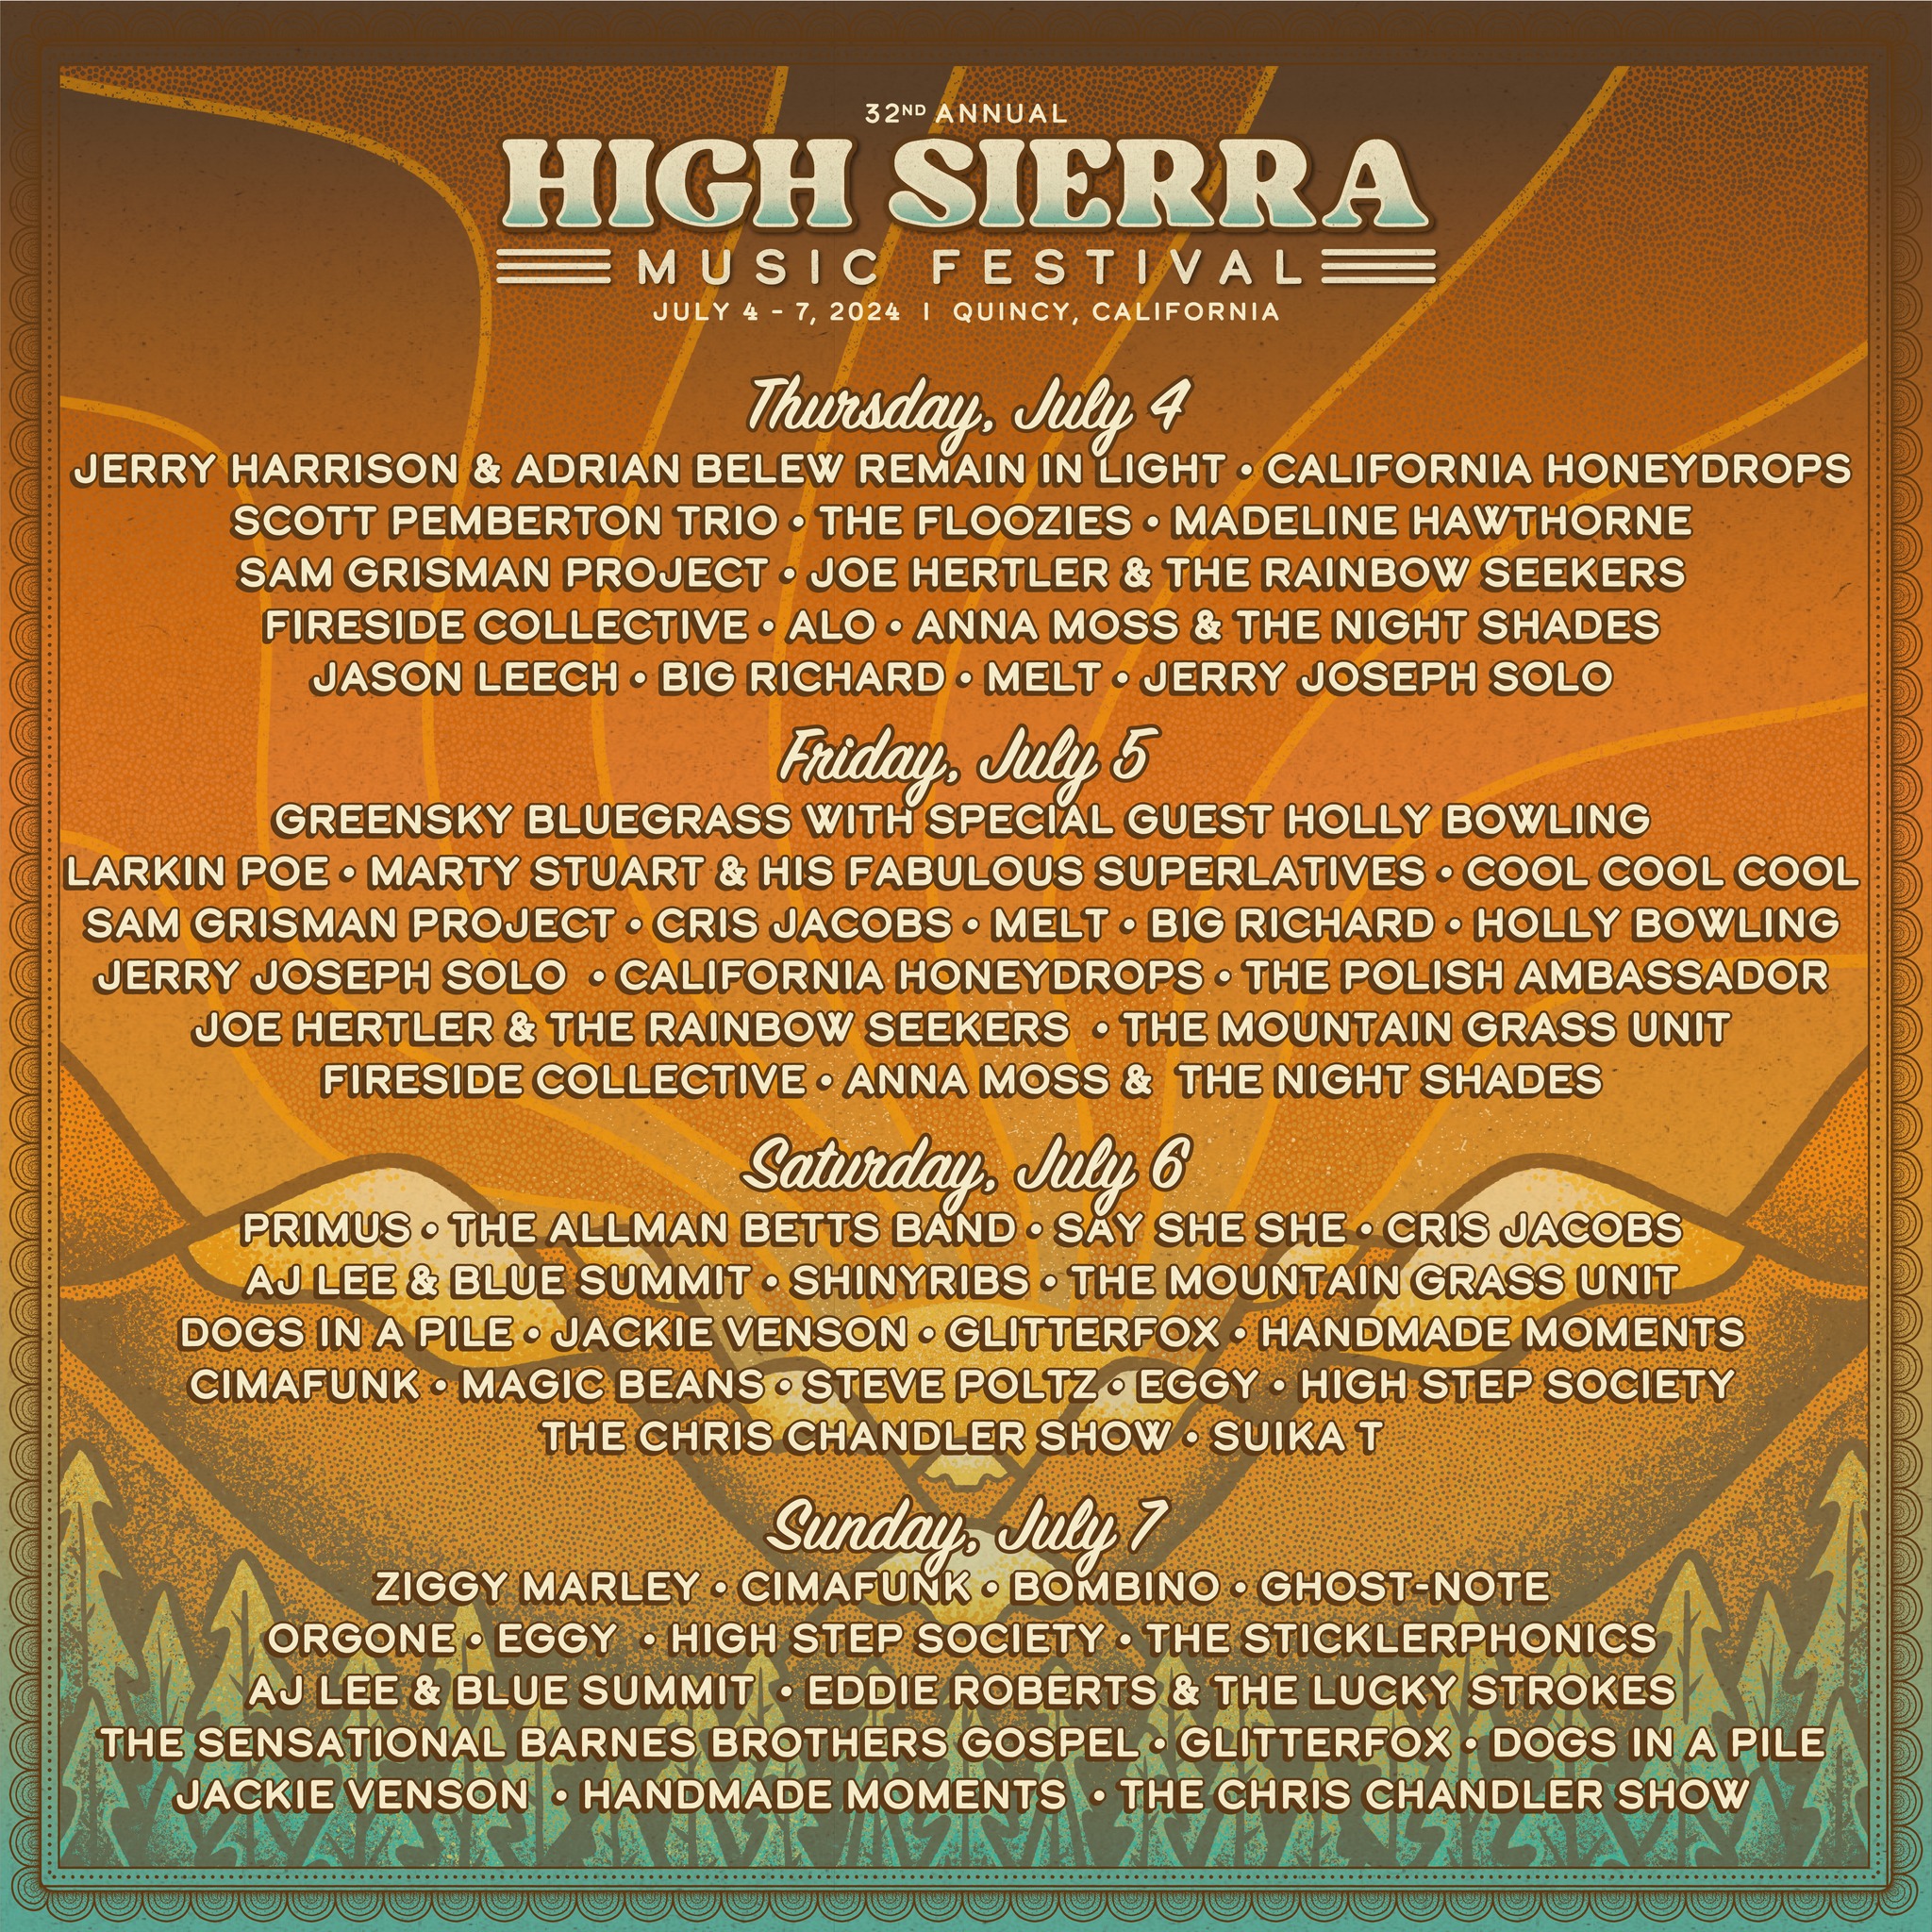 High Sierra Music Festival music lineup